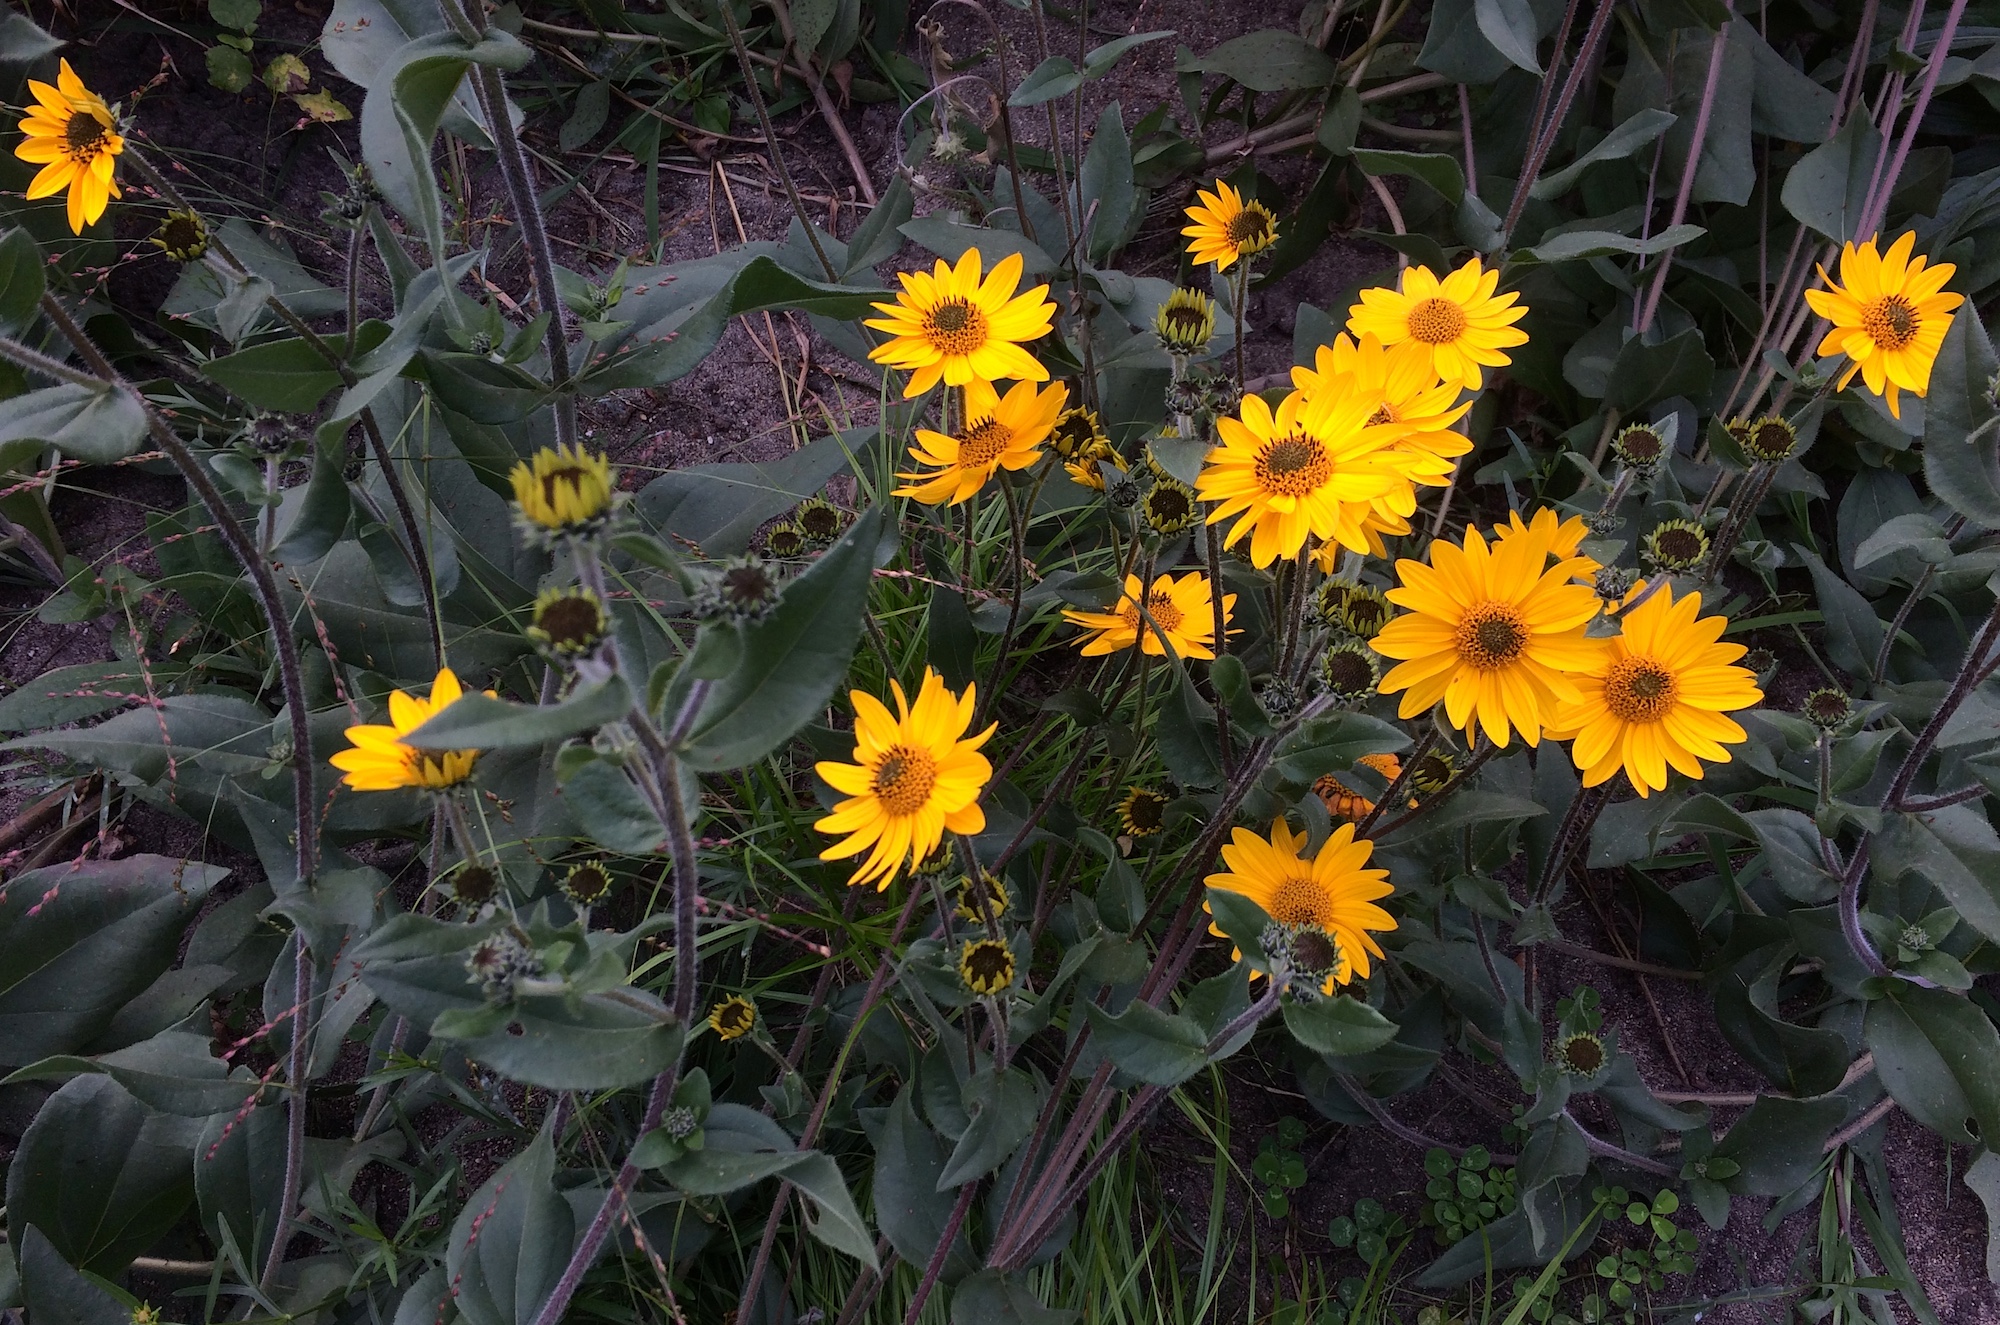 Western sunflower (Helianthus occidentalis) in the Civic Center Bird Garden